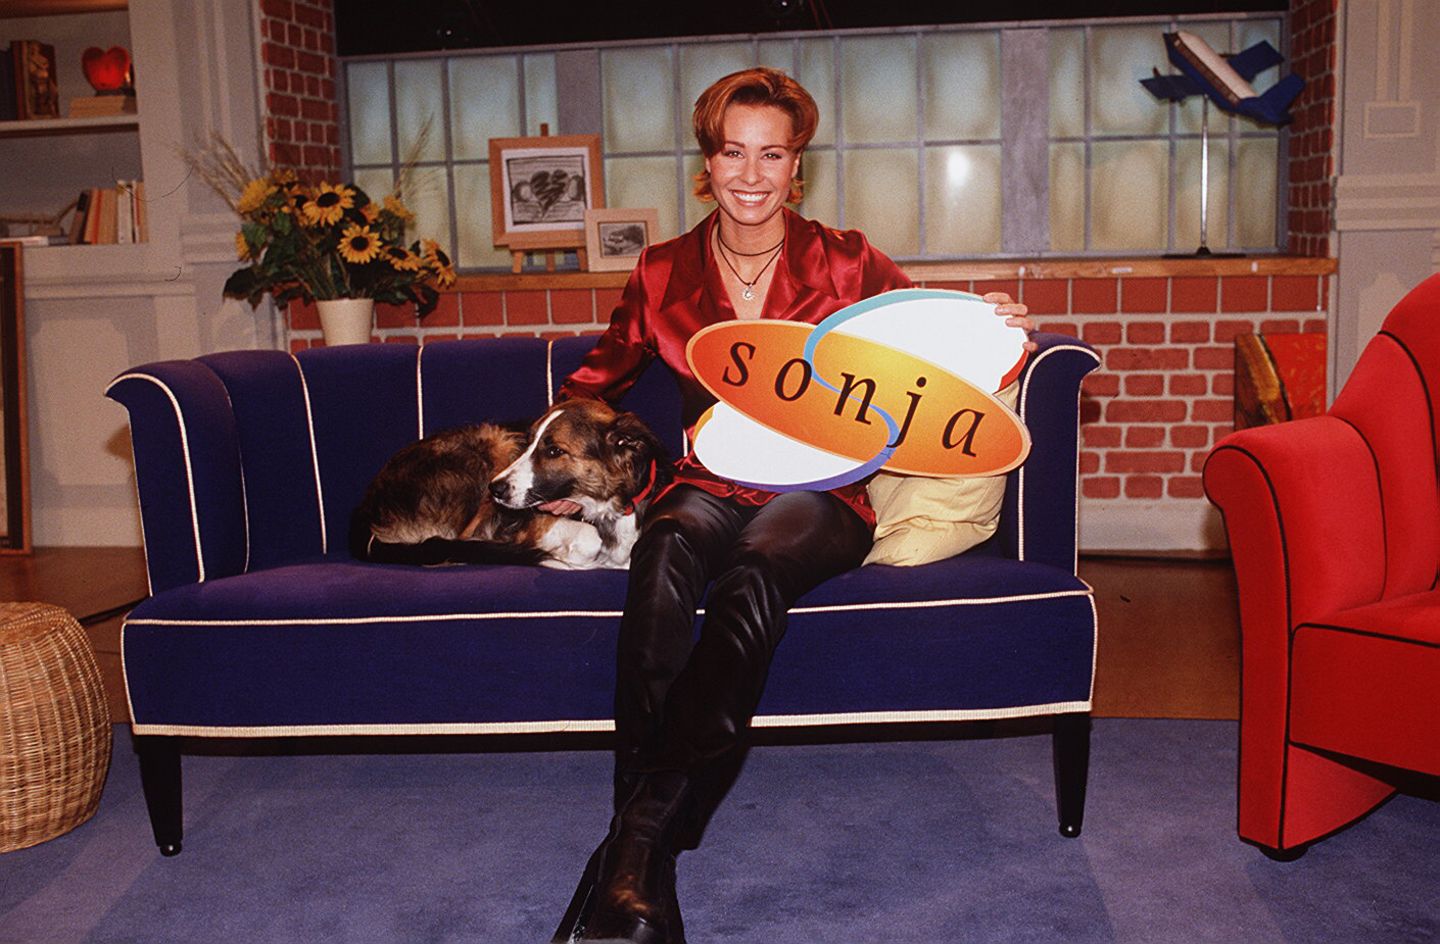 "Sonja" (Sat.1) lief von 1997 bis 2001 im deutschen Fernsehen. Auch heute ist Sonja Zietlow eine gefragte Moderatorin ...